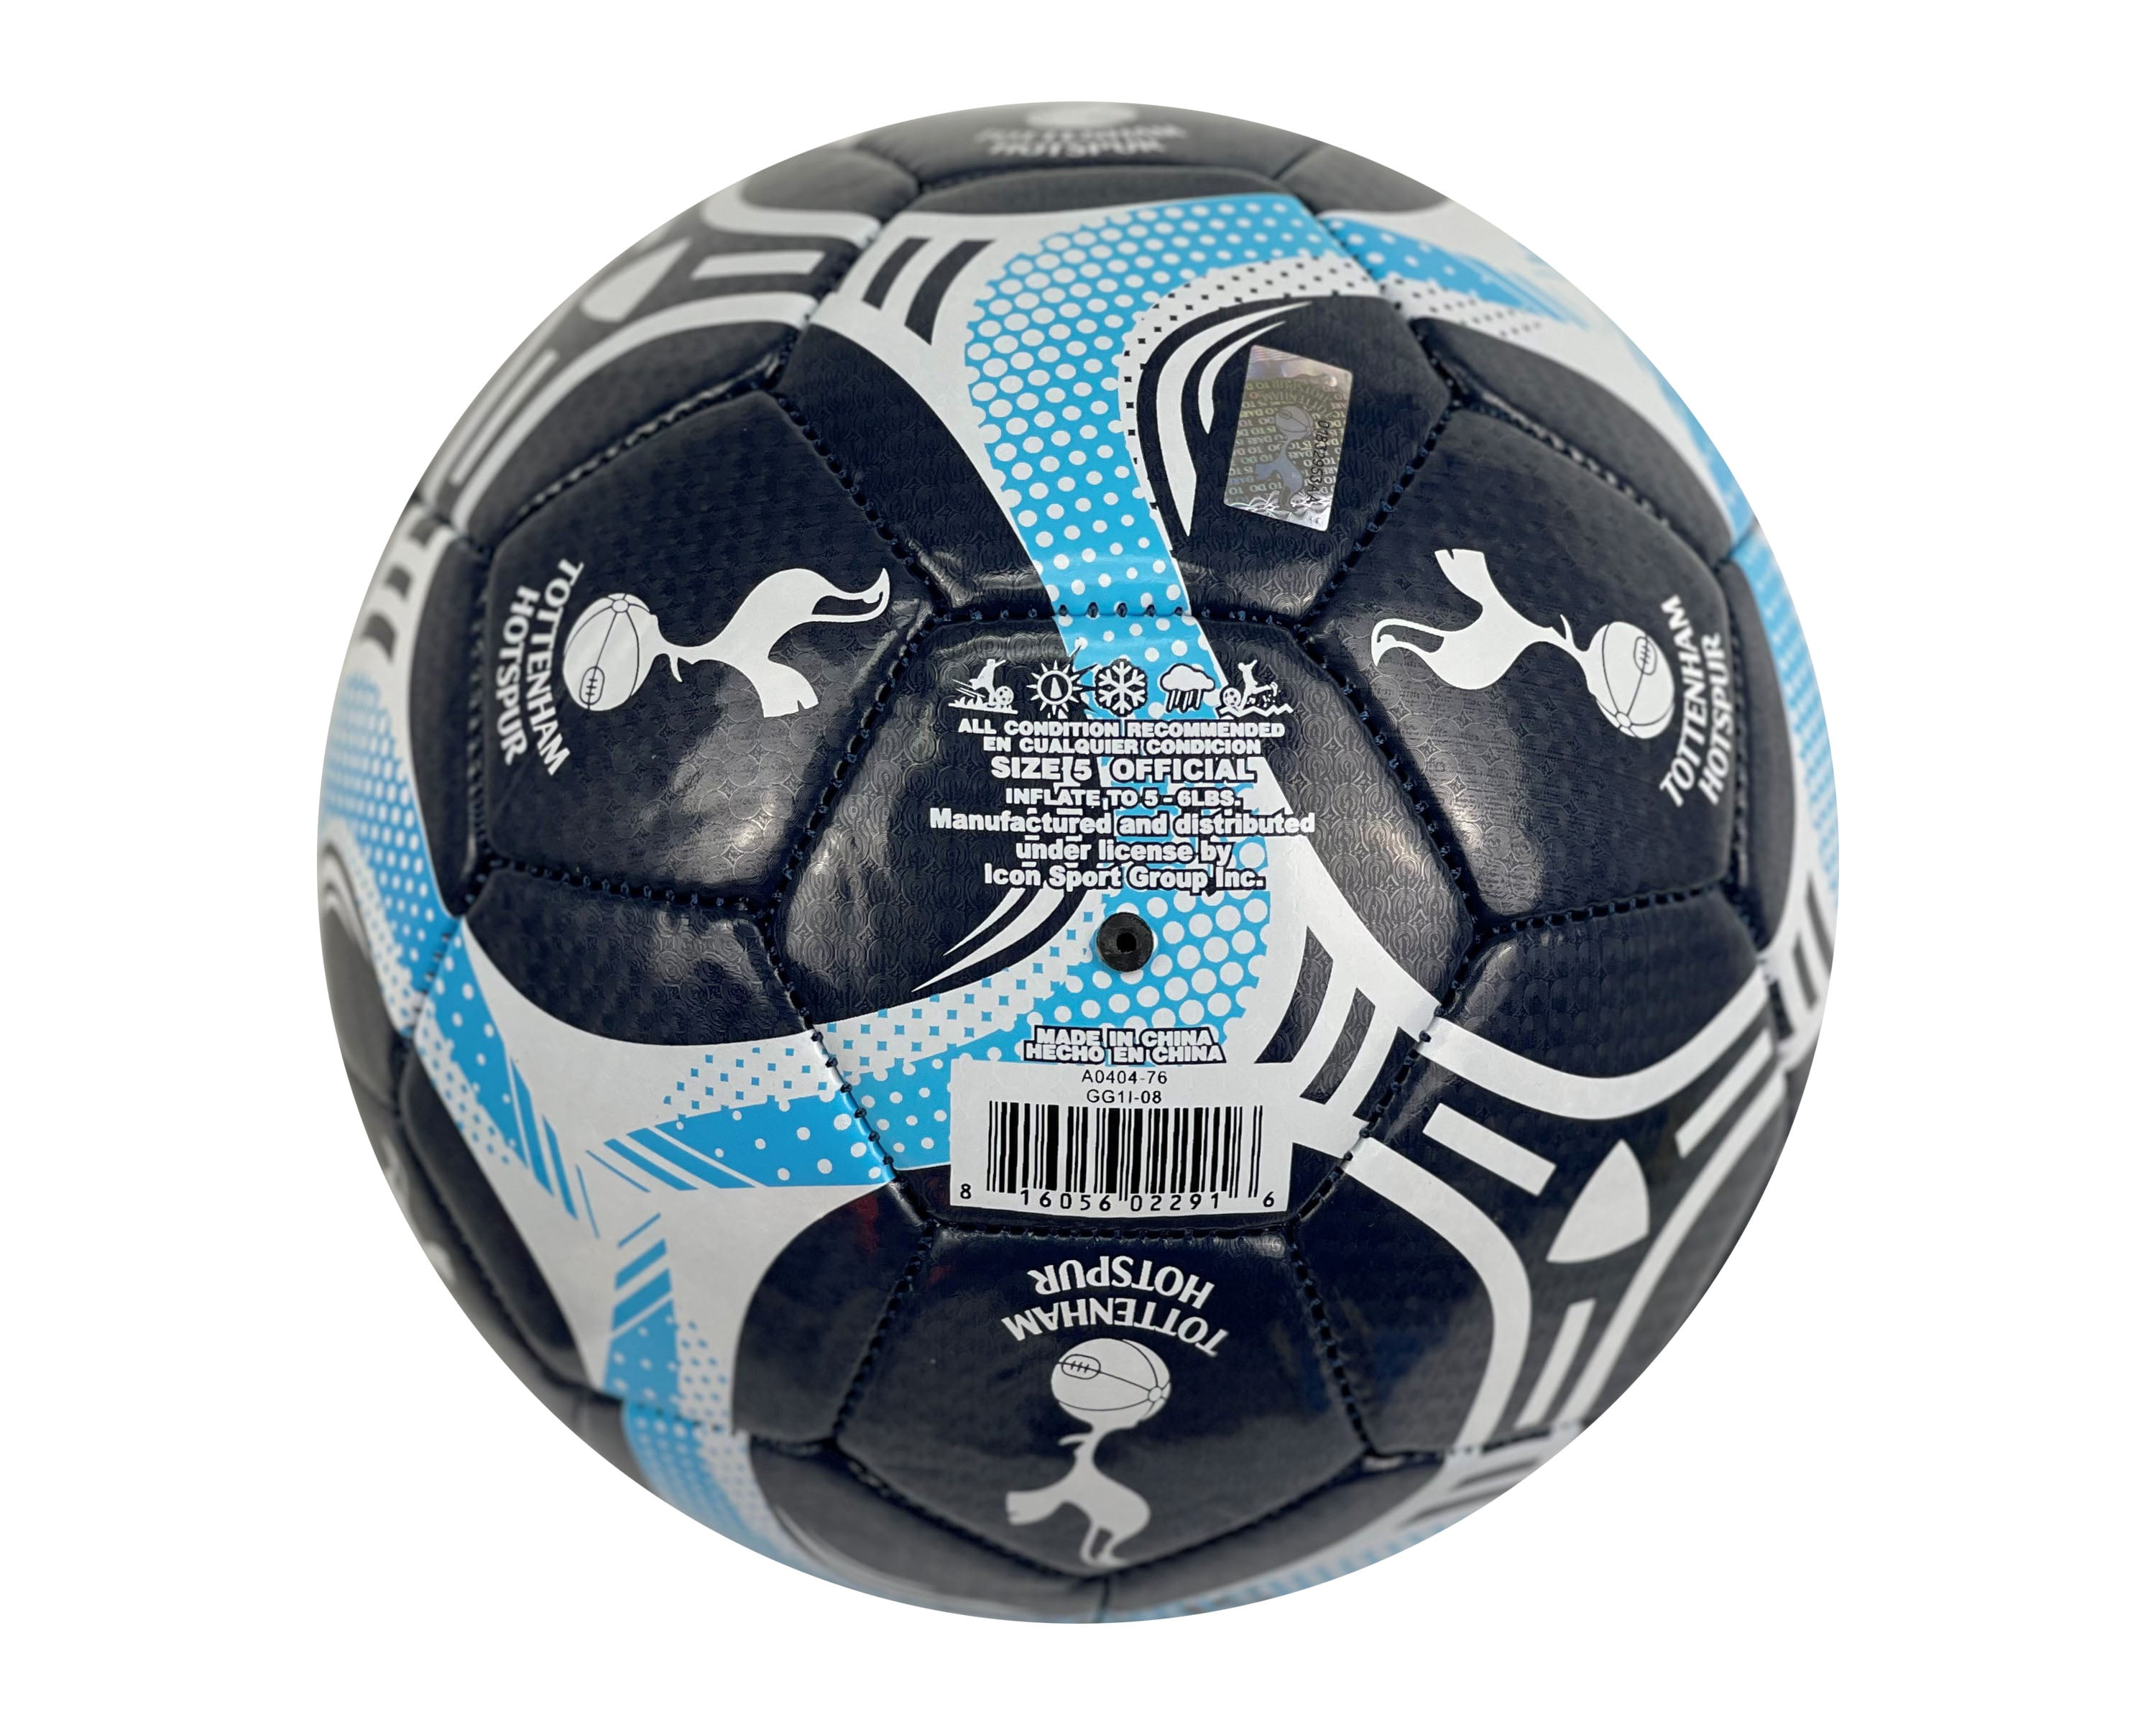 Official Tottenham Ball #5 Tottenham Hotspur Soccer Ball Size 5 